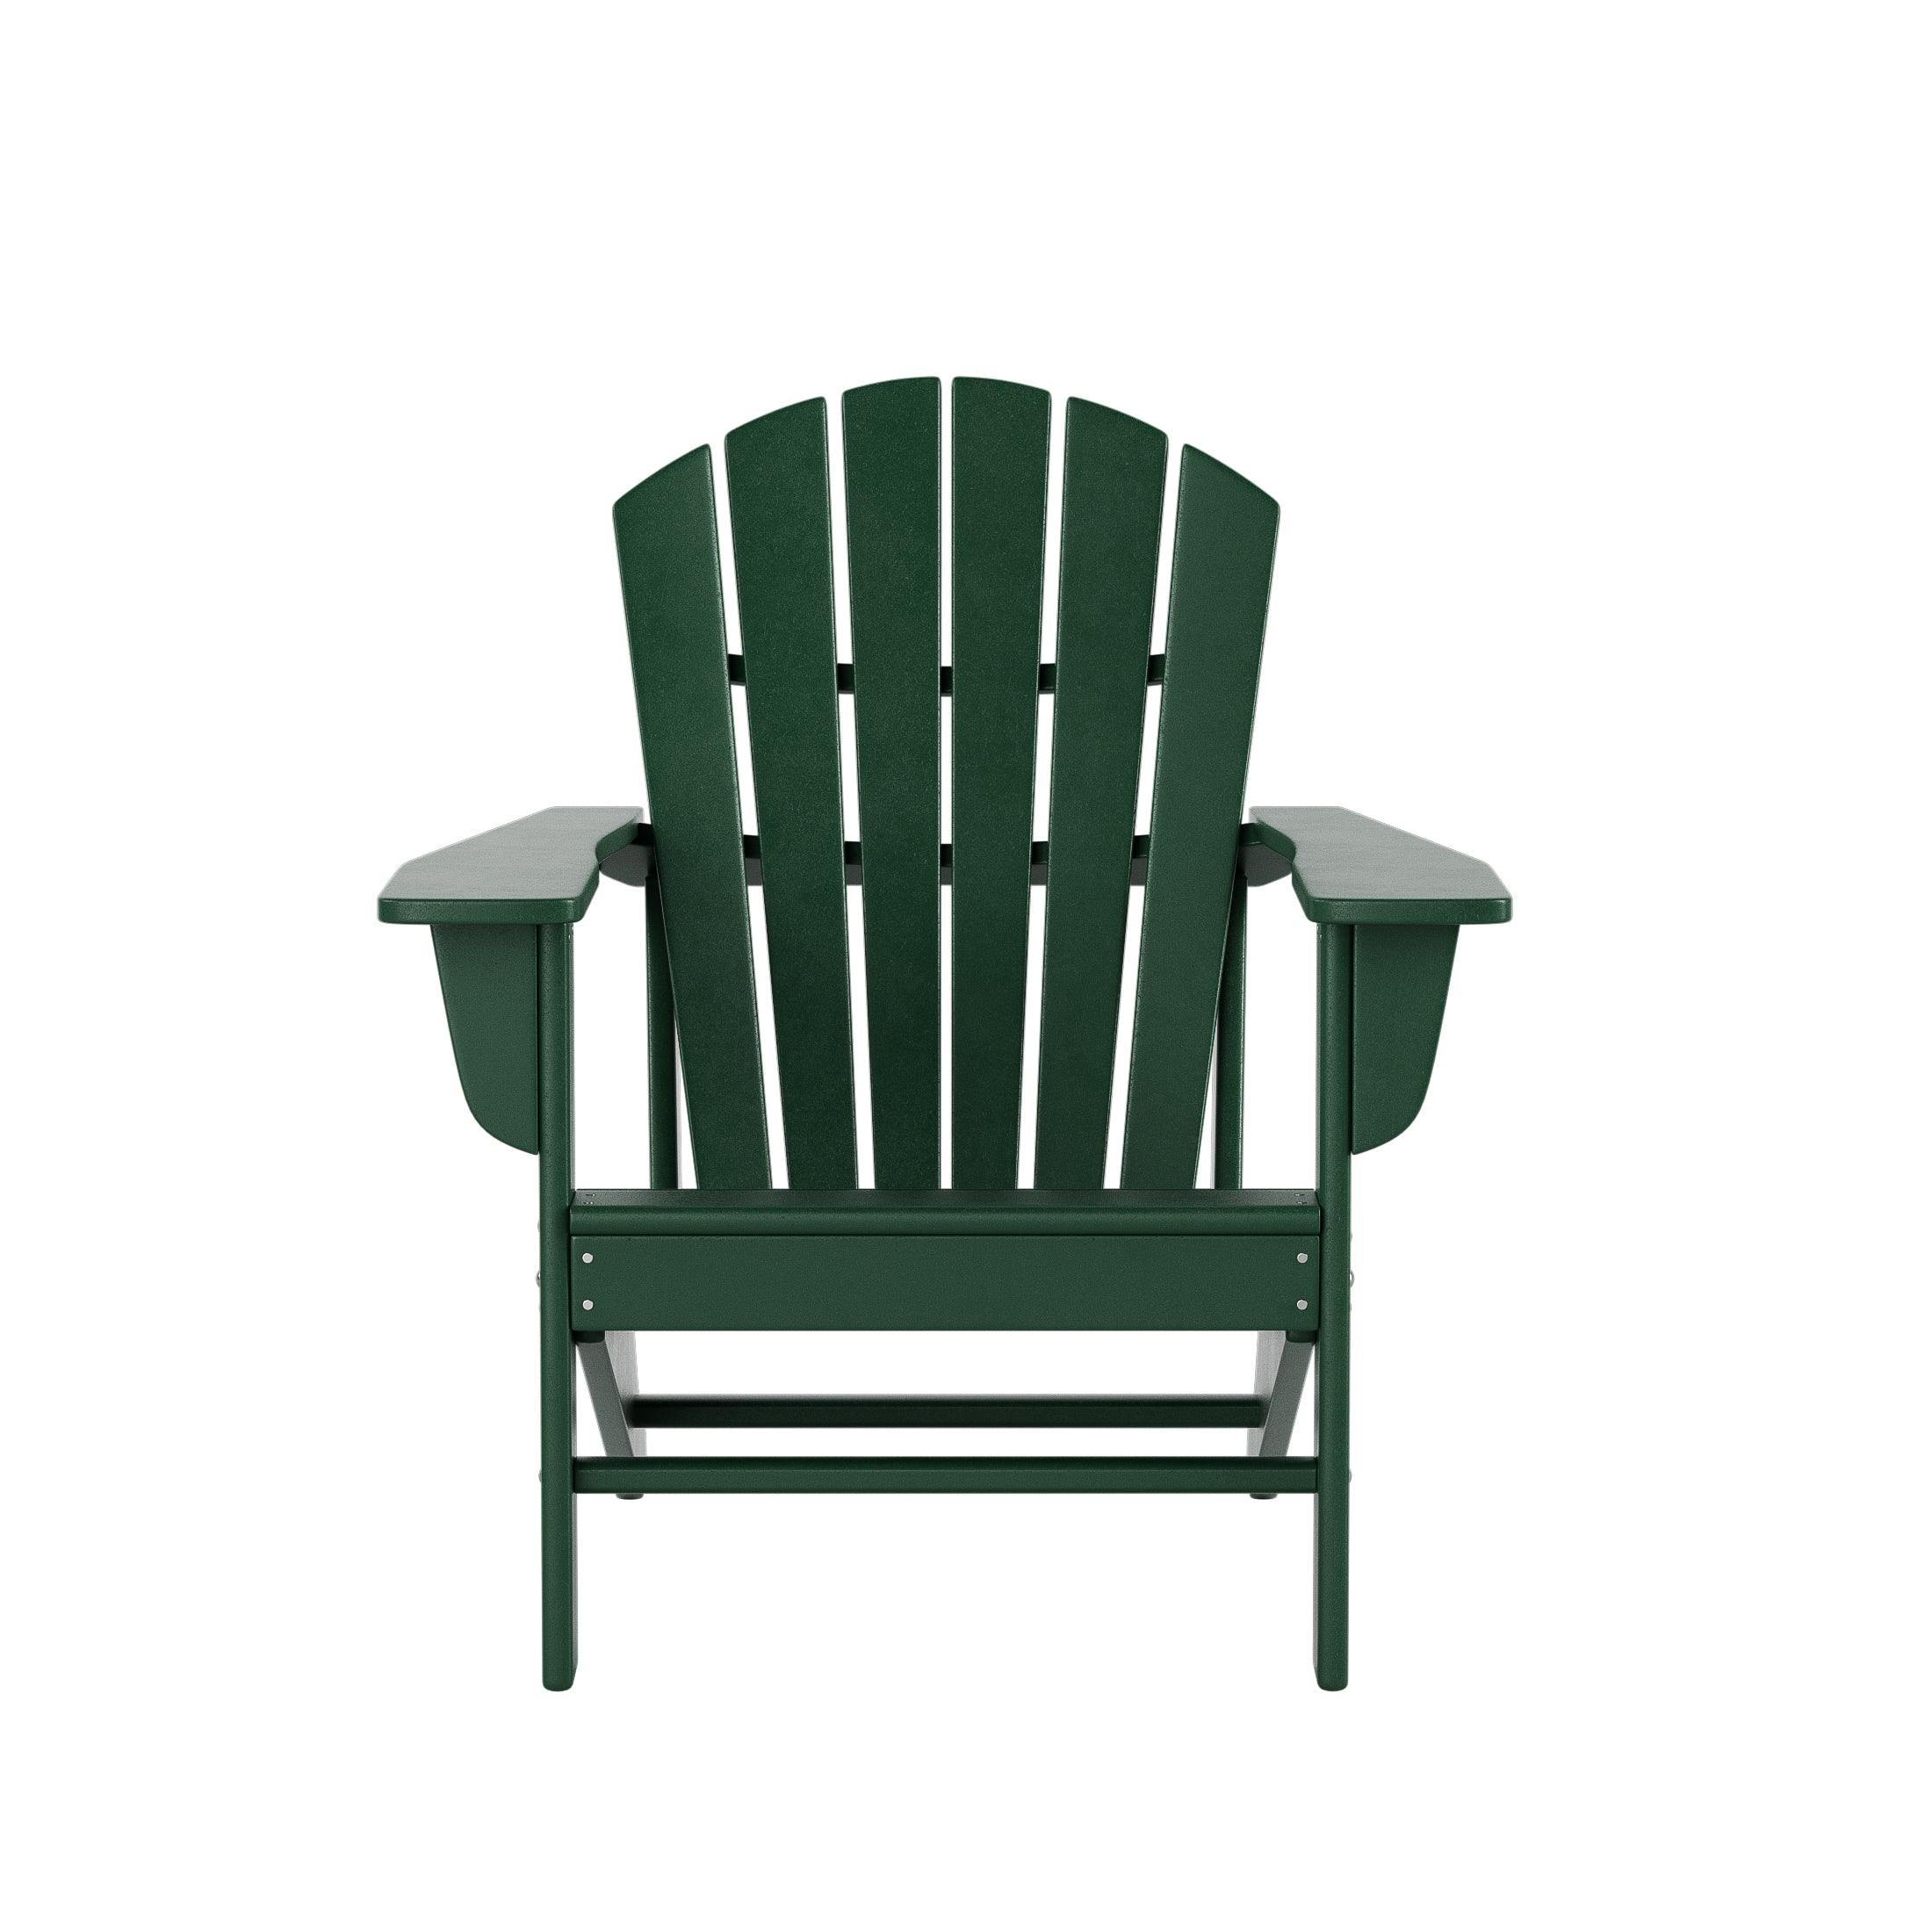 Costaelm Outdoor Adirondack Chair With Ottoman 2-Piece Set, Dark Green